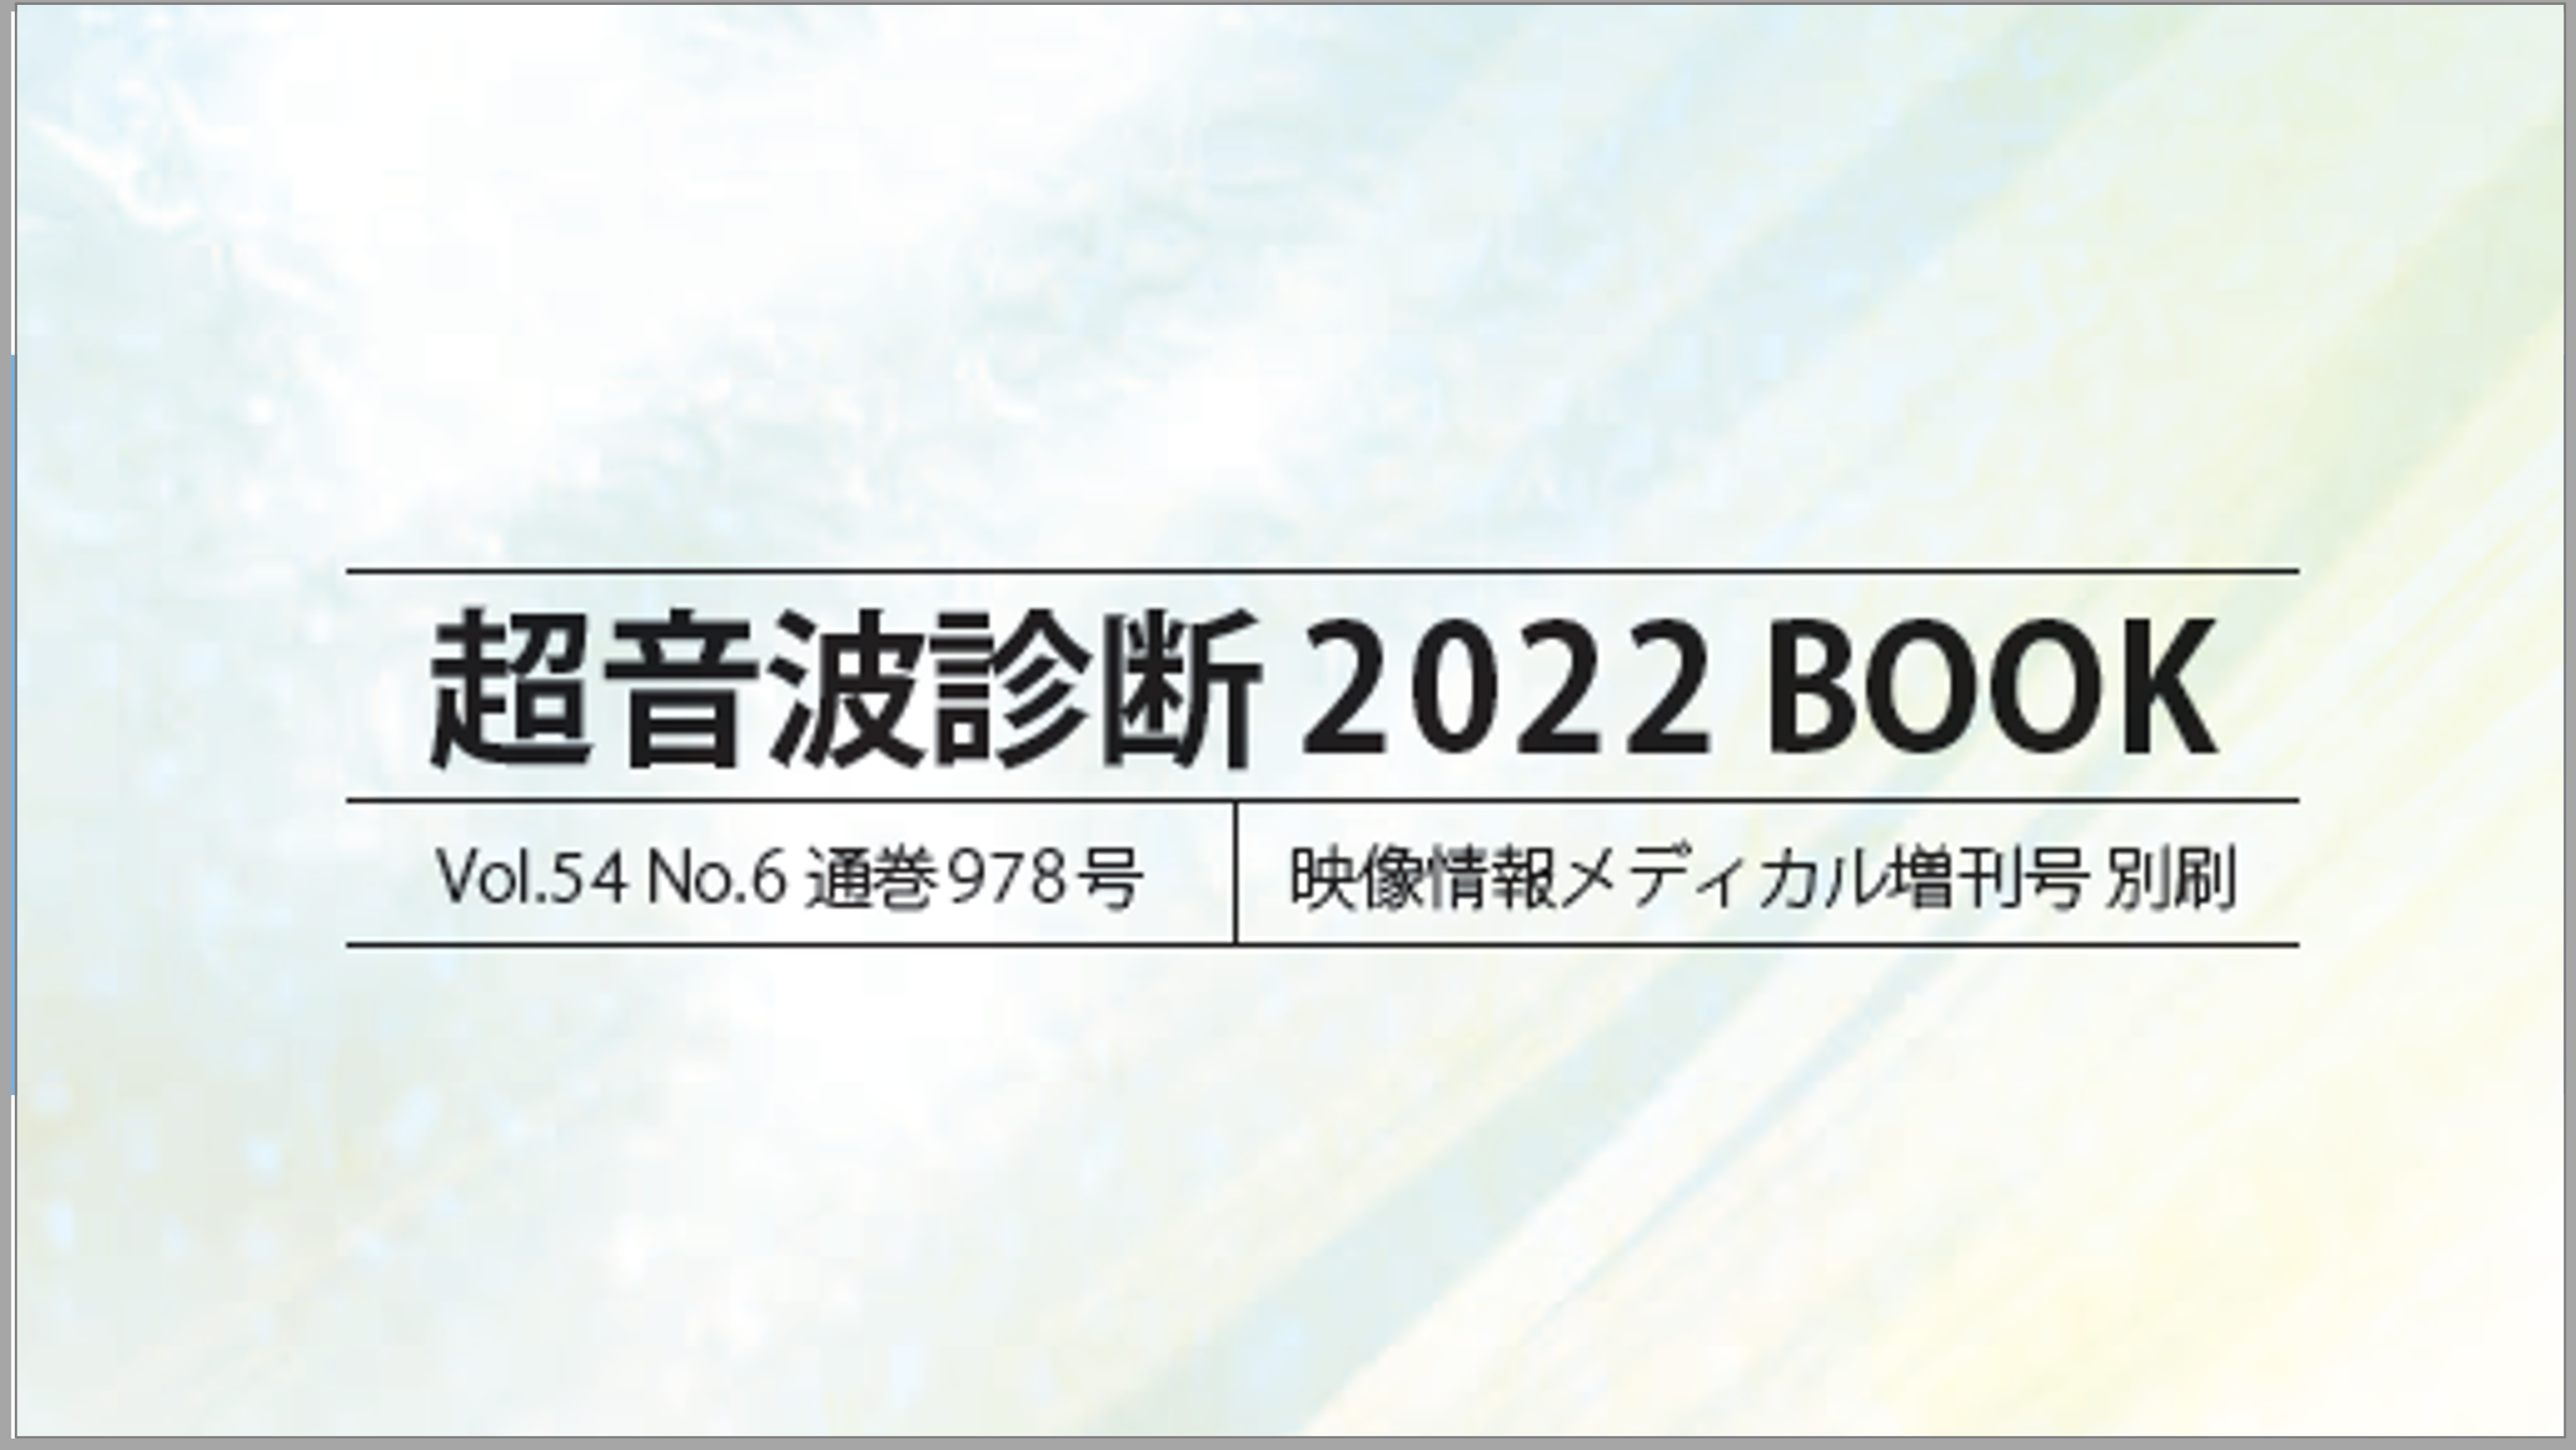 映像情報メディカル増刊号「超音波診断 2022 BOOK」